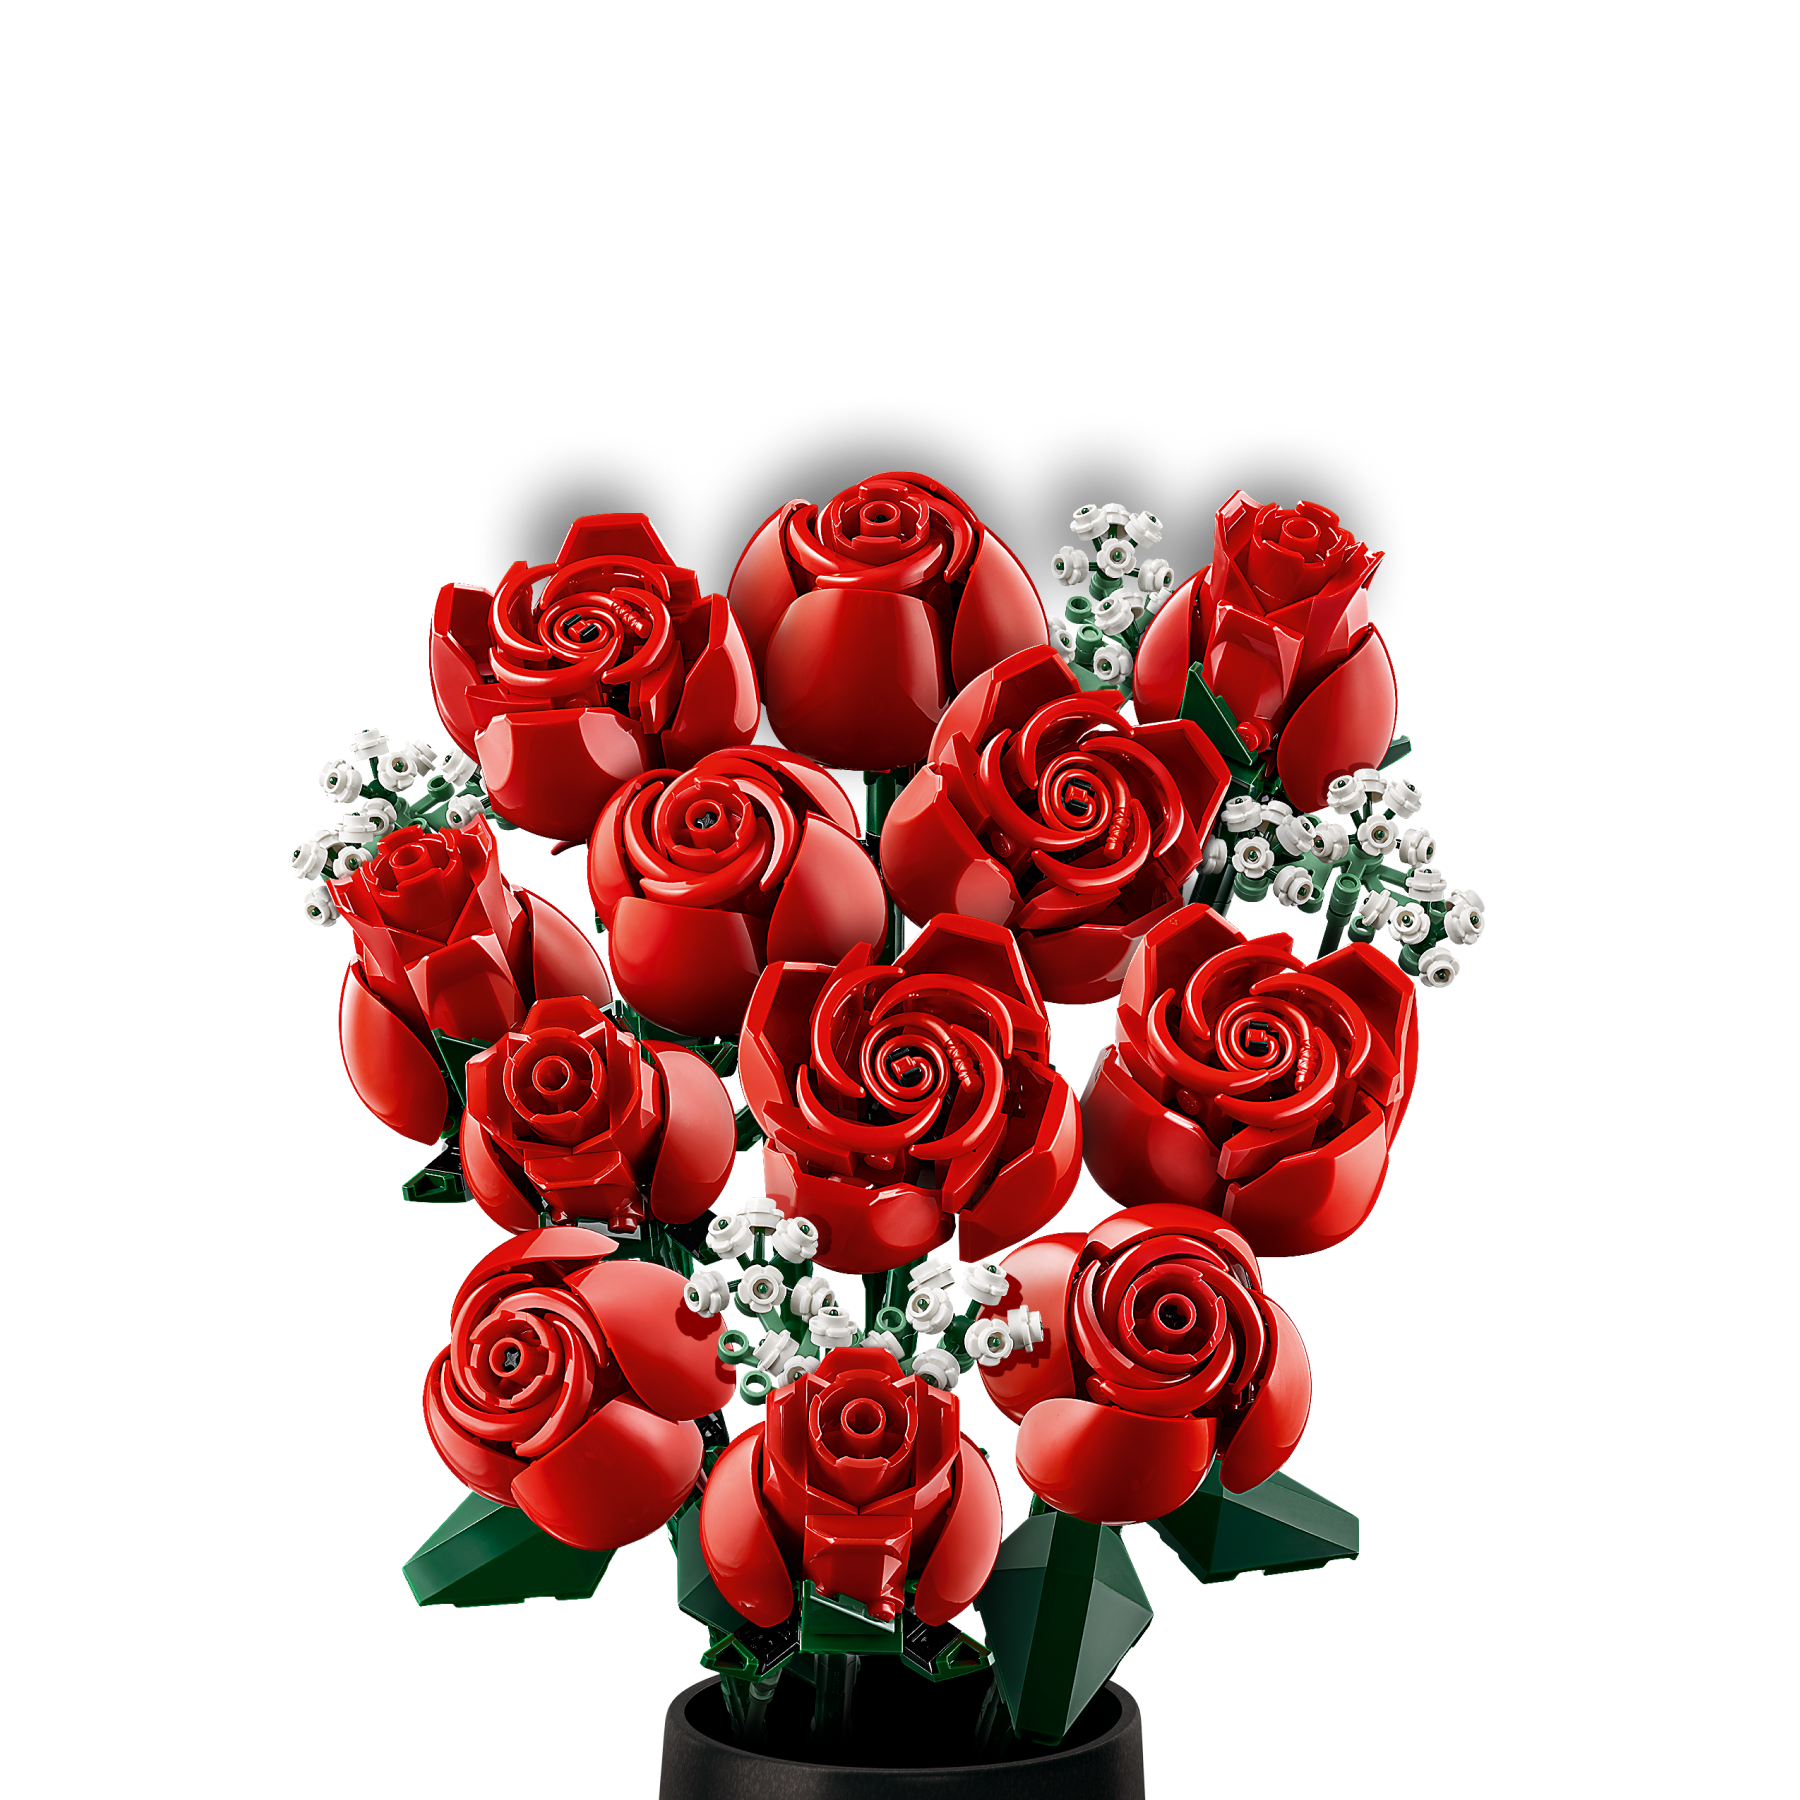 LEGO annuncia il Bouquet di Rose: un regalo perfetto per Natale e